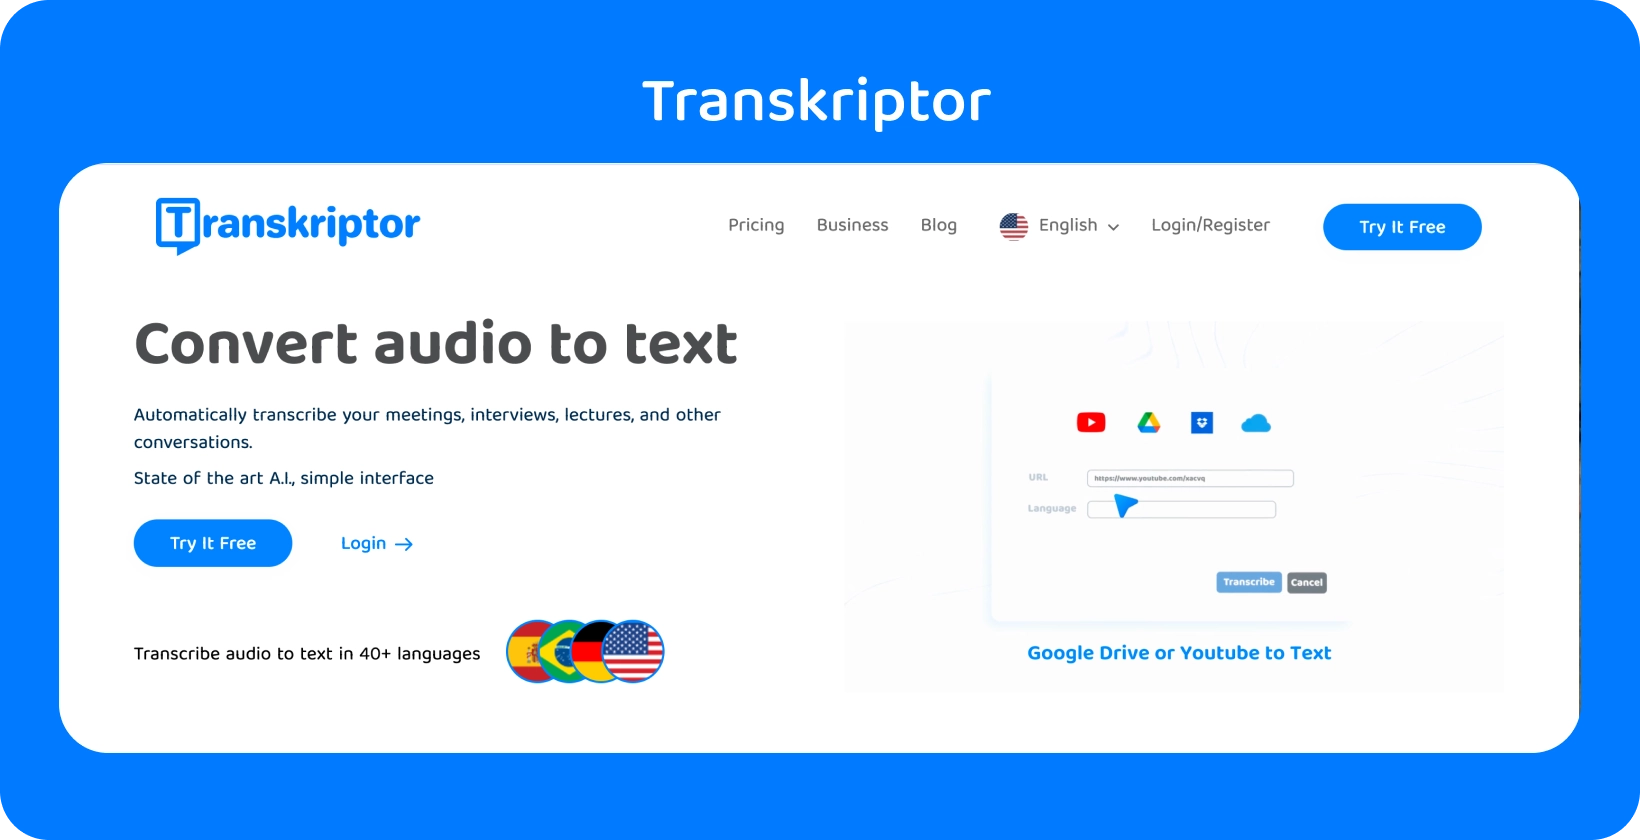 Strona internetowa Transkriptora wspomina o funkcji "Konwertuj dźwięk na tekst", gotowej do łatwej transkrypcji.